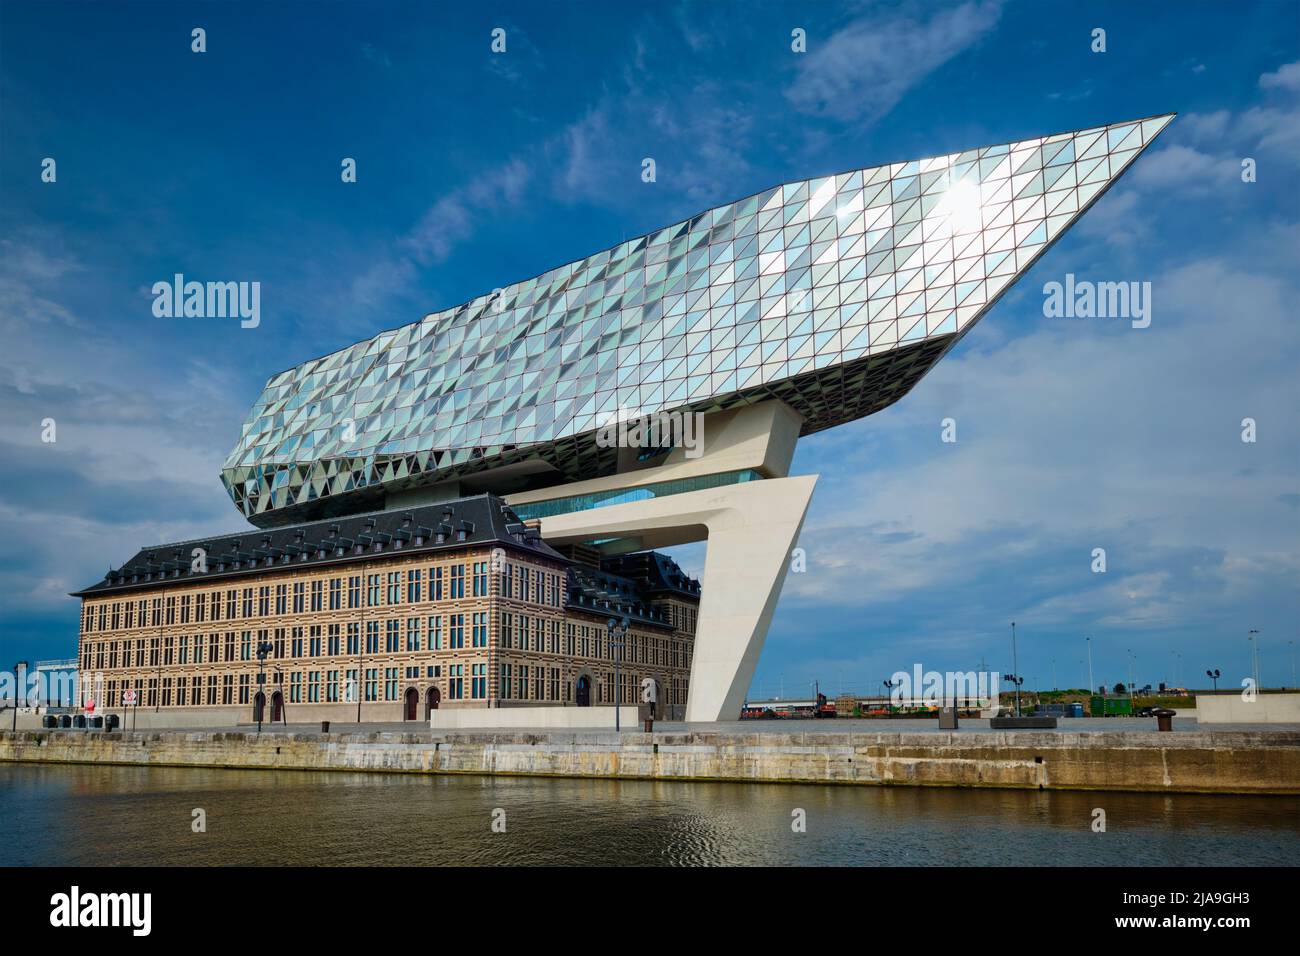 ANVERSA, BELGIO - 27 MAGGIO 2018: Casa dell'autorità portuale (Porthuis) progettata dai famosi architetti Zaha Hadid che è stato il suo ultimo progetto Foto Stock